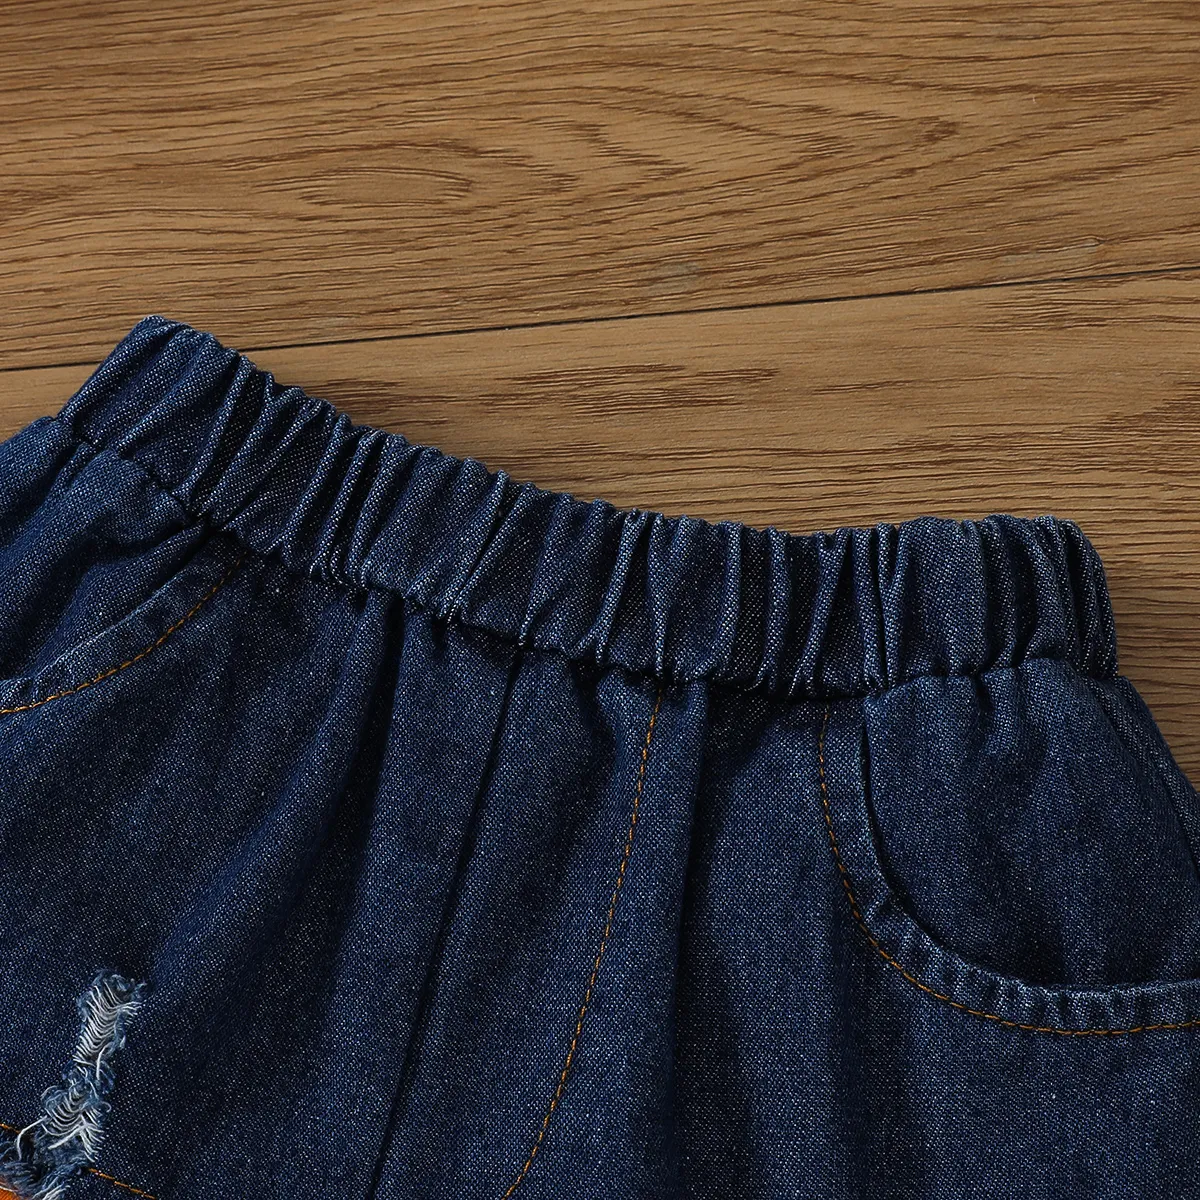 2pcs Toddler Girl Trendy Cotton Ruffled Camisole and Ripped Panel Denim Shorts Set Orange big image 1